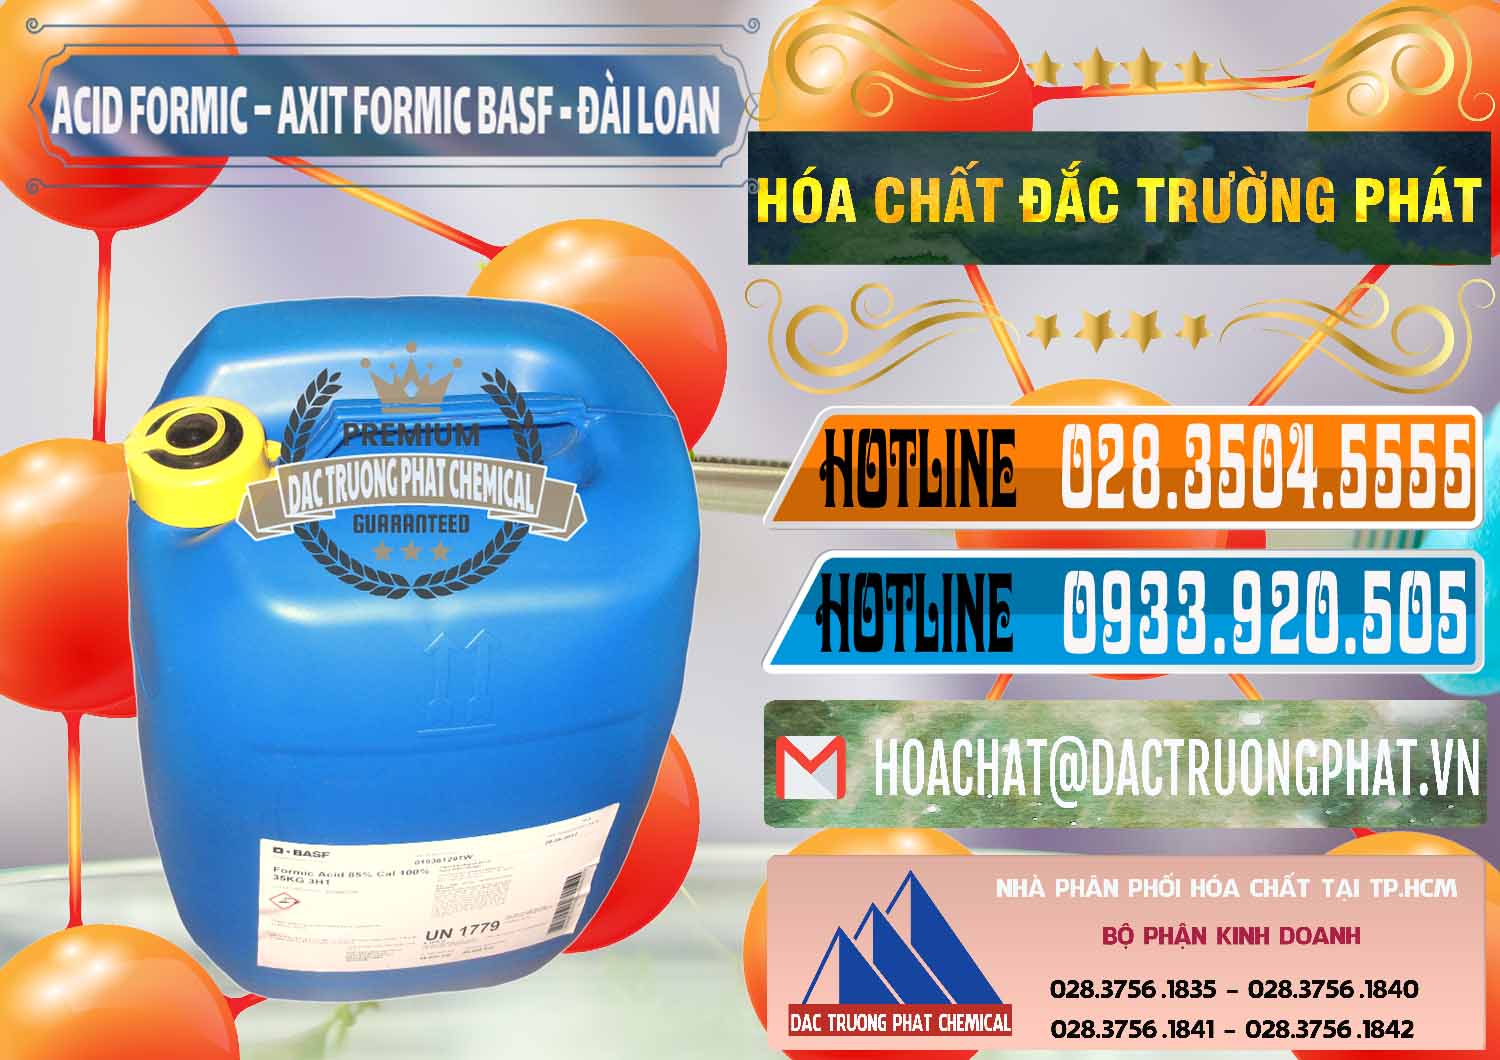 Cty nhập khẩu ( bán ) Acid Formic - Axit Formic 85% BASF Đài Loan Taiwan - 0027 - Công ty chuyên cung cấp - kinh doanh hóa chất tại TP.HCM - stmp.net